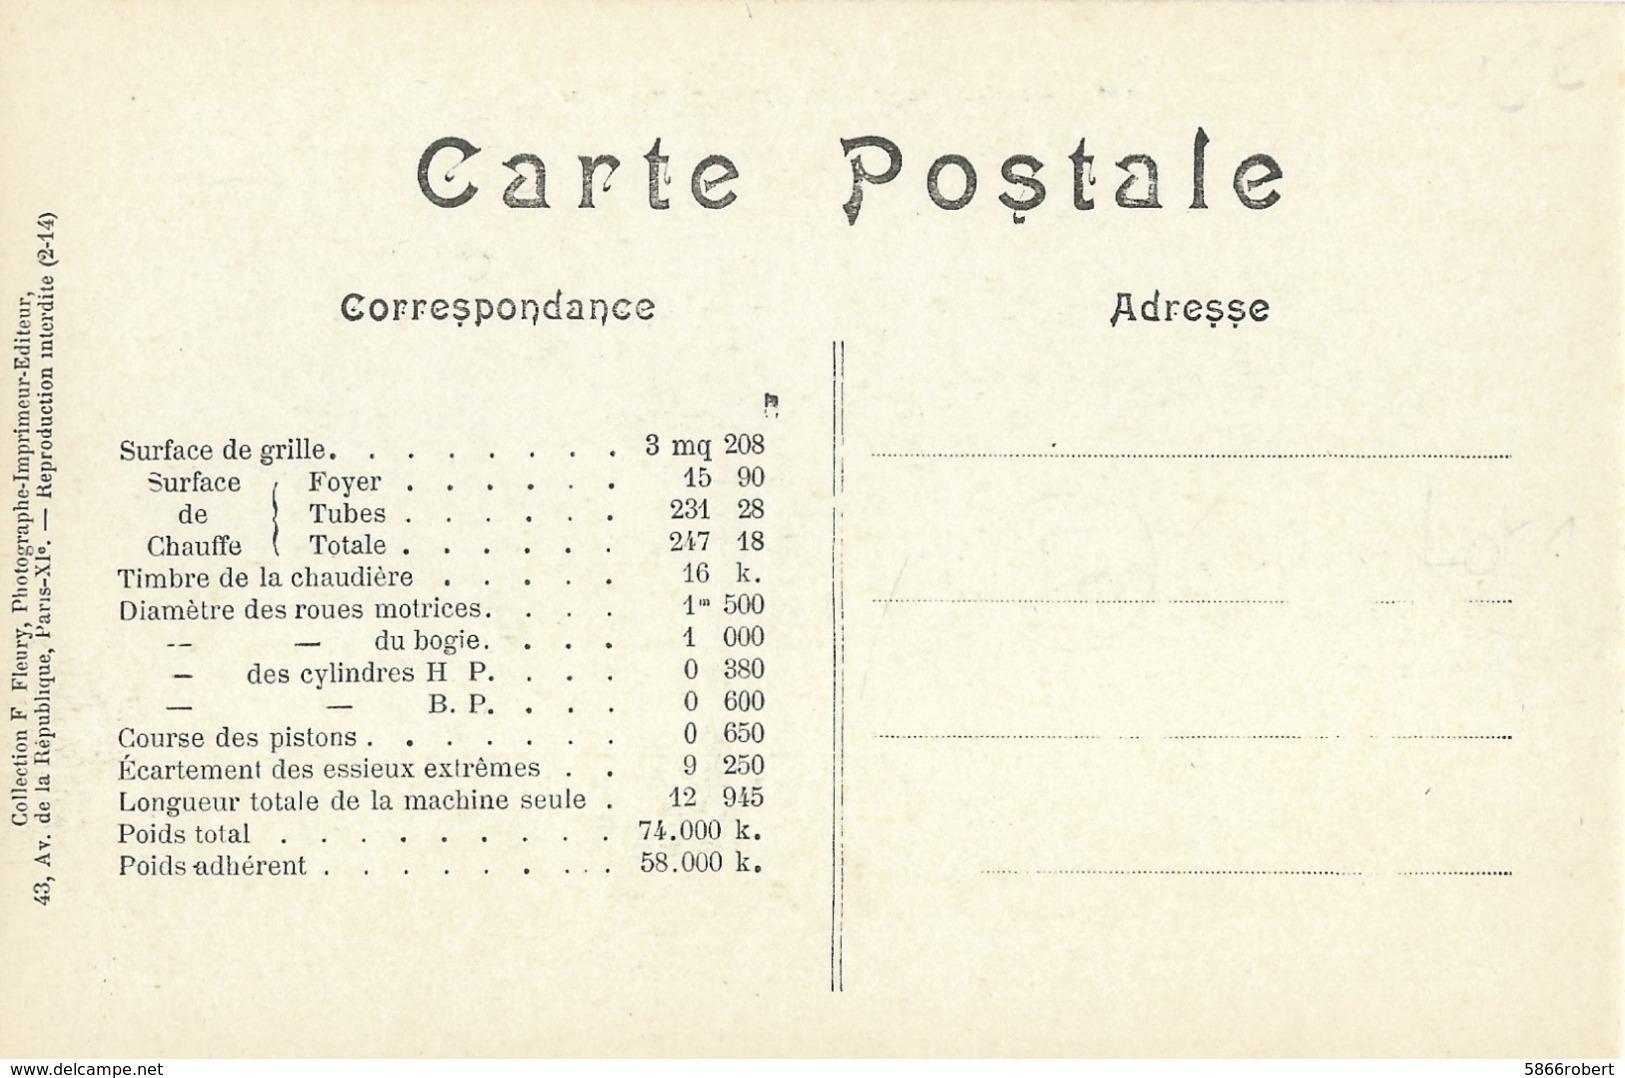 CARTE POSTALE ORIGINALE ANCIENNE : LOCOMOTIVE FRANCAISE A VAPEUR ( P. L. M.) MACHINE N° 4838 DE 1908 A 1909 - Matériel